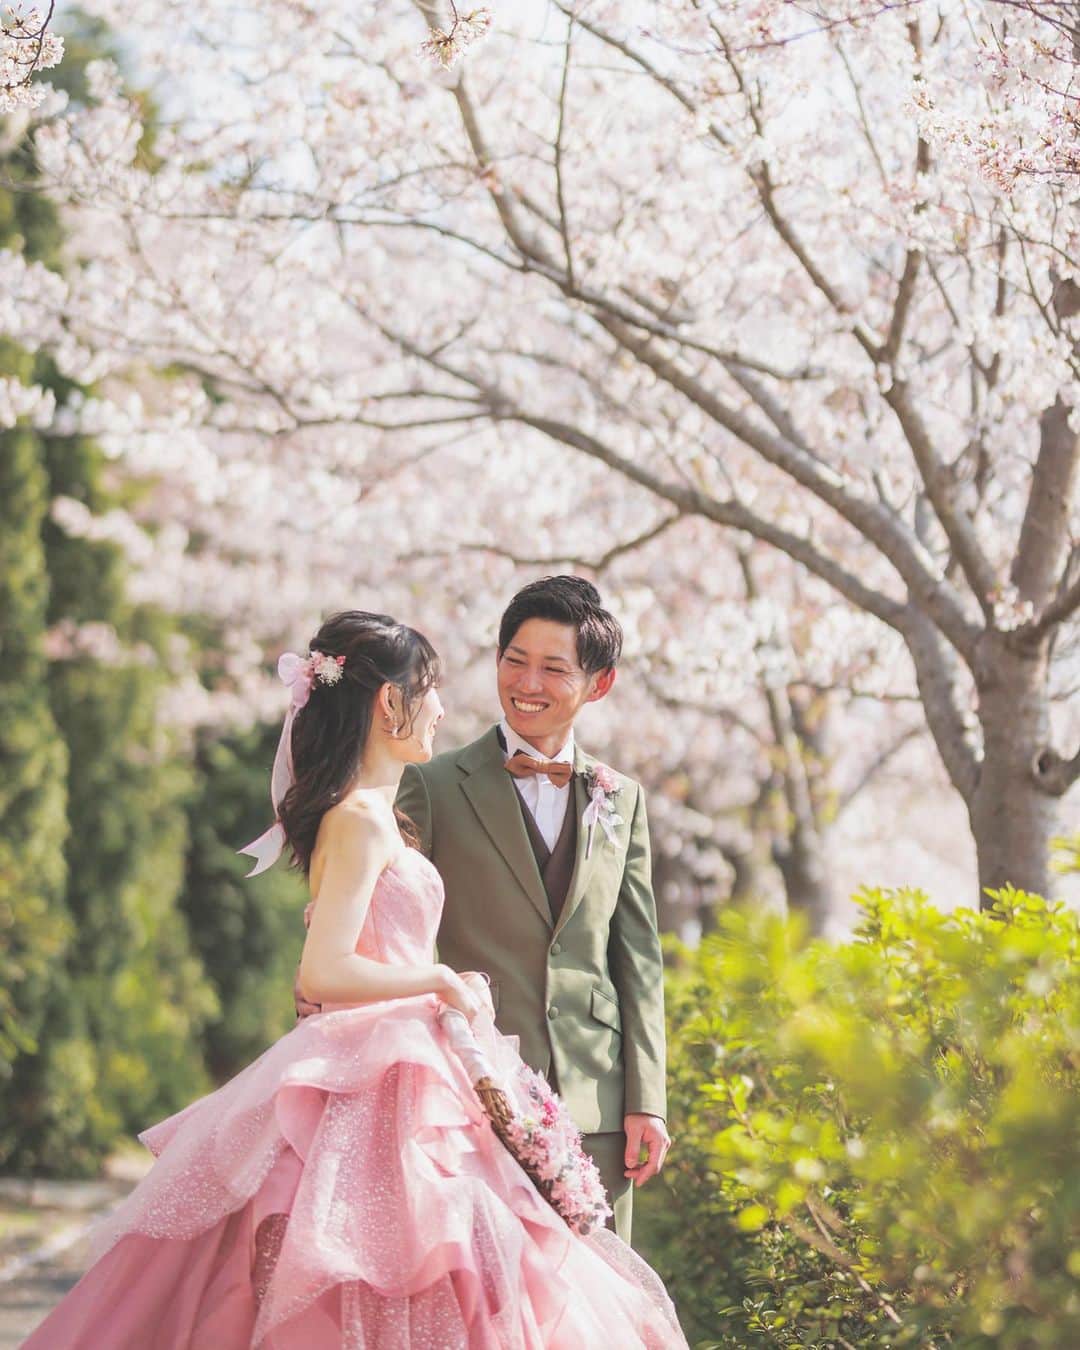 ザ・チェルシーコートおゆみ野ガーデンのインスタグラム：「*  満開の桜が良く似合うお2人٭❀*  3月4月は人気の桜のシーズン！ 運が良ければ満開の桜をバックに挙式も…𖤥𖤘⋆*  春ならではの素敵なお写真をチェルシーコートで残しませんか⸜♡⸝   #結婚式を持ち帰ろう   #チェルシーコートおゆみ野ガーデン #チェルシーコート #チェル嫁 #チェル婚 #式場探し #wedding #bride  #リゾートウェディング #千葉婚 #千葉花嫁 #フォト婚 #ウェディングフォト #プレ花嫁 #花嫁diy  #ナチュラルウェディング #千葉結婚式場  #ウェディングアイテム #ガーデン挙式  #オリジナルウェディング #結婚式  #結婚式準備 #桜 #桜満開 #cherryblossom  #お子様ウェディング  #パパママ婚 #2023夏婚 #2023秋婚 #2023冬婚」